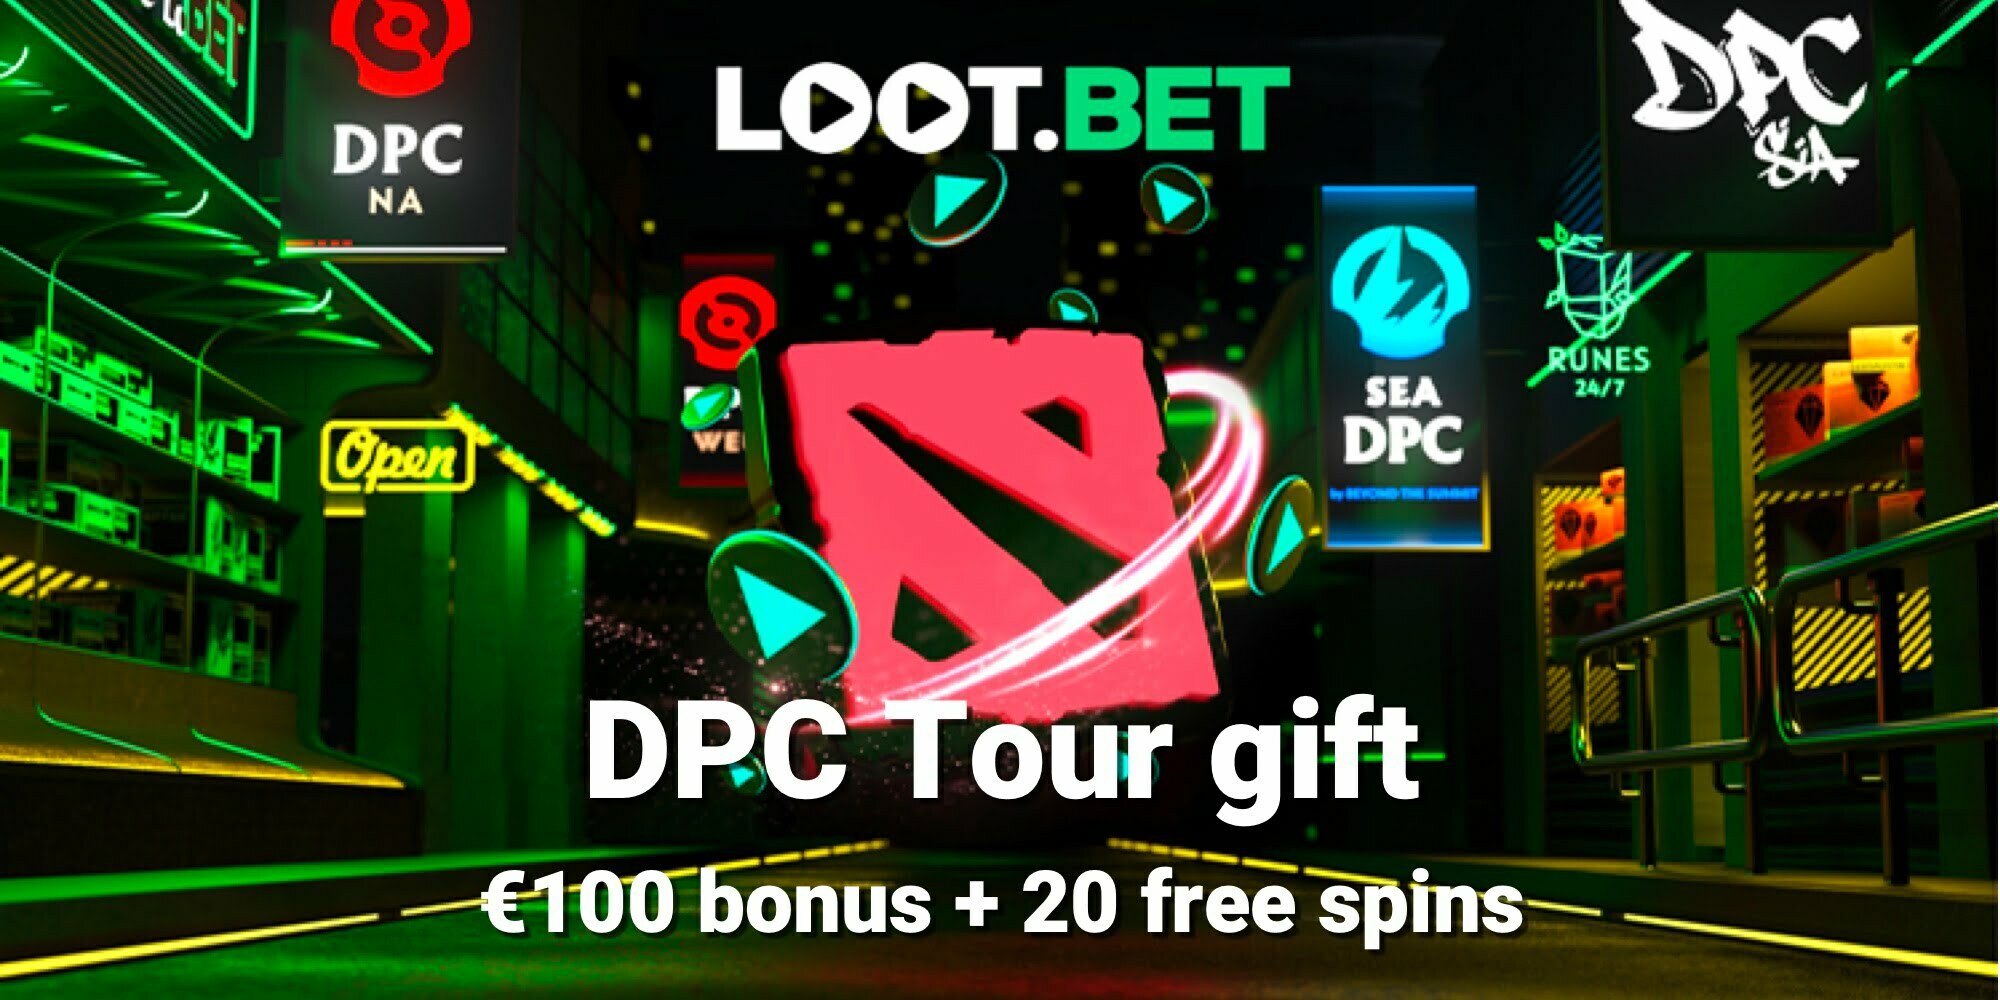 Paket Hadiah Tur DPC di Loot.bet: bonus €100 + €20 taruhan gratis